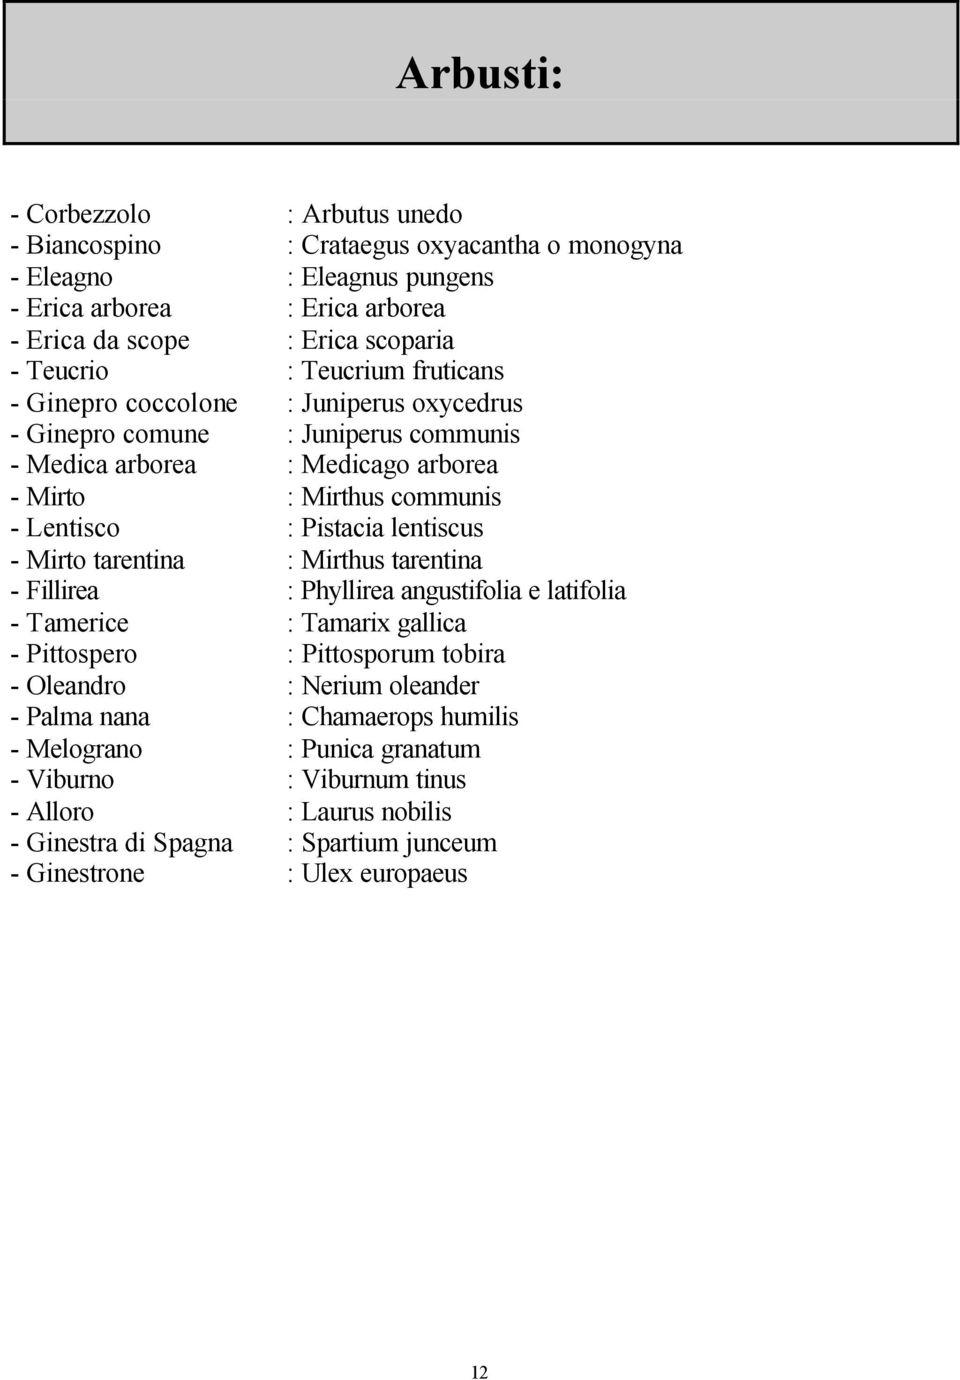 Pistacia lentiscus - Mirto tarentina : Mirthus tarentina - Fillirea : Phyllirea angustifolia e latifolia - Tamerice : Tamarix gallica - Pittospero : Pittosporum tobira - Oleandro : Nerium